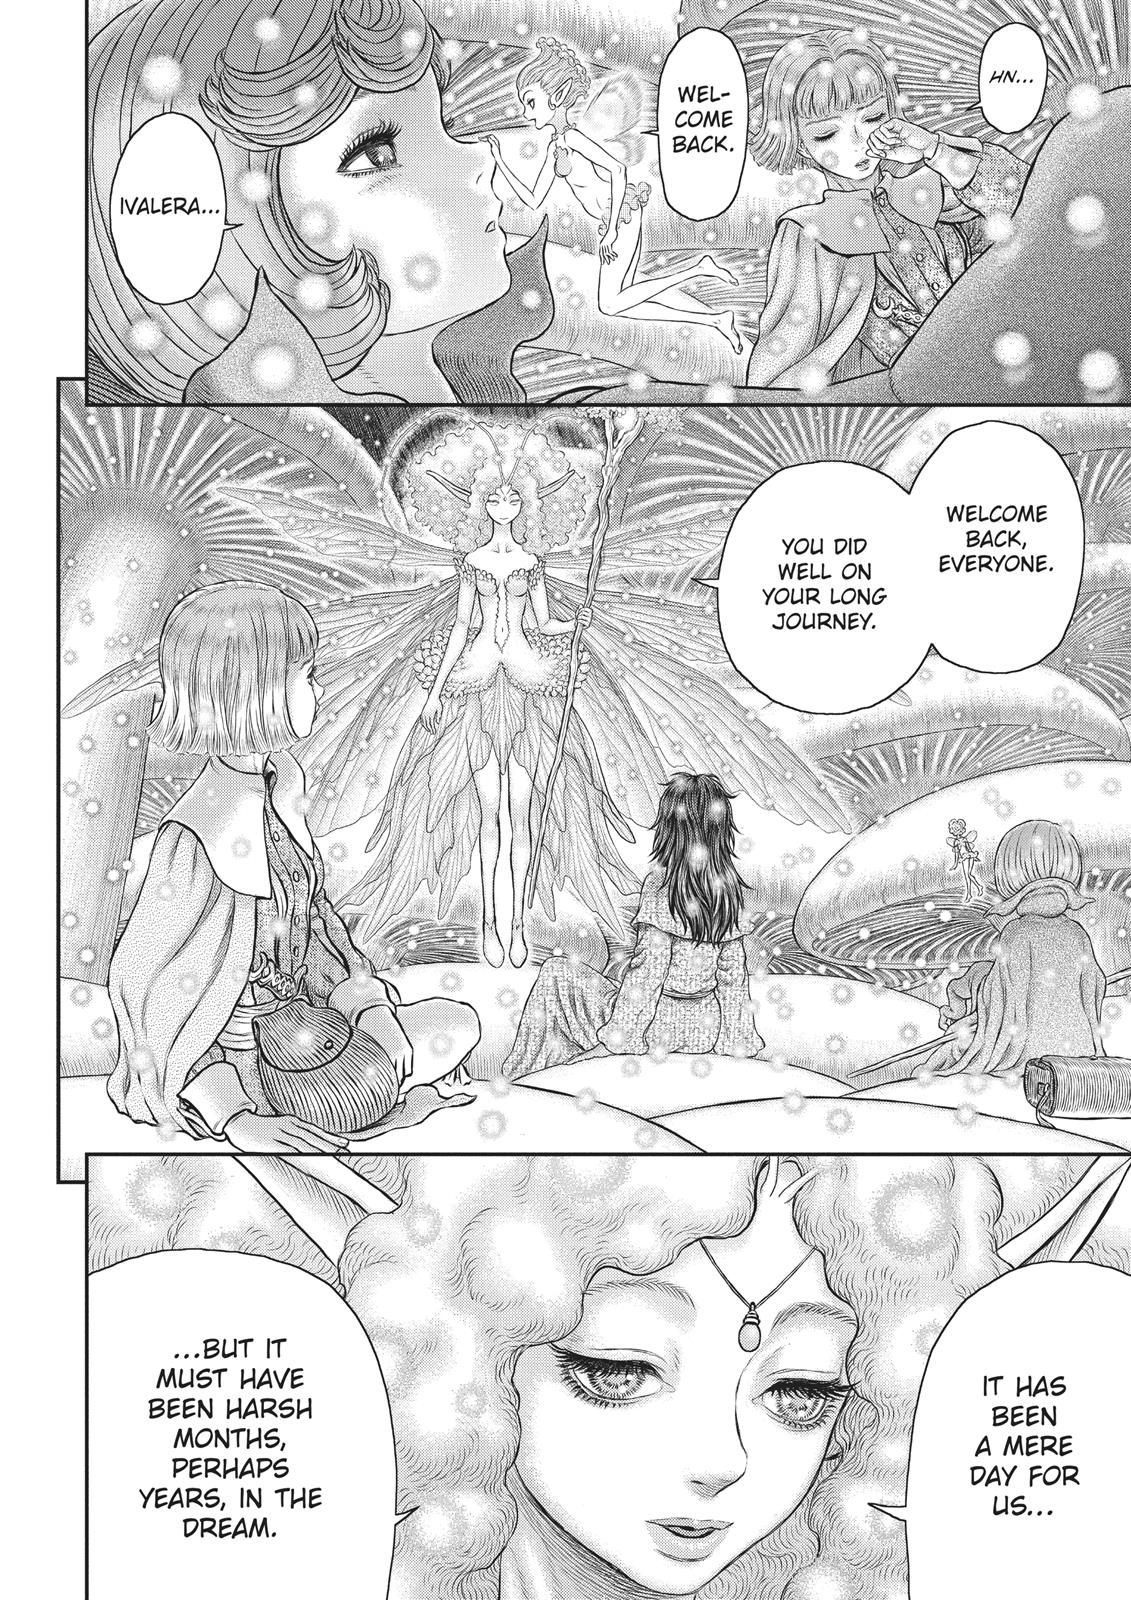 Berserk Manga Chapter 355 image 02